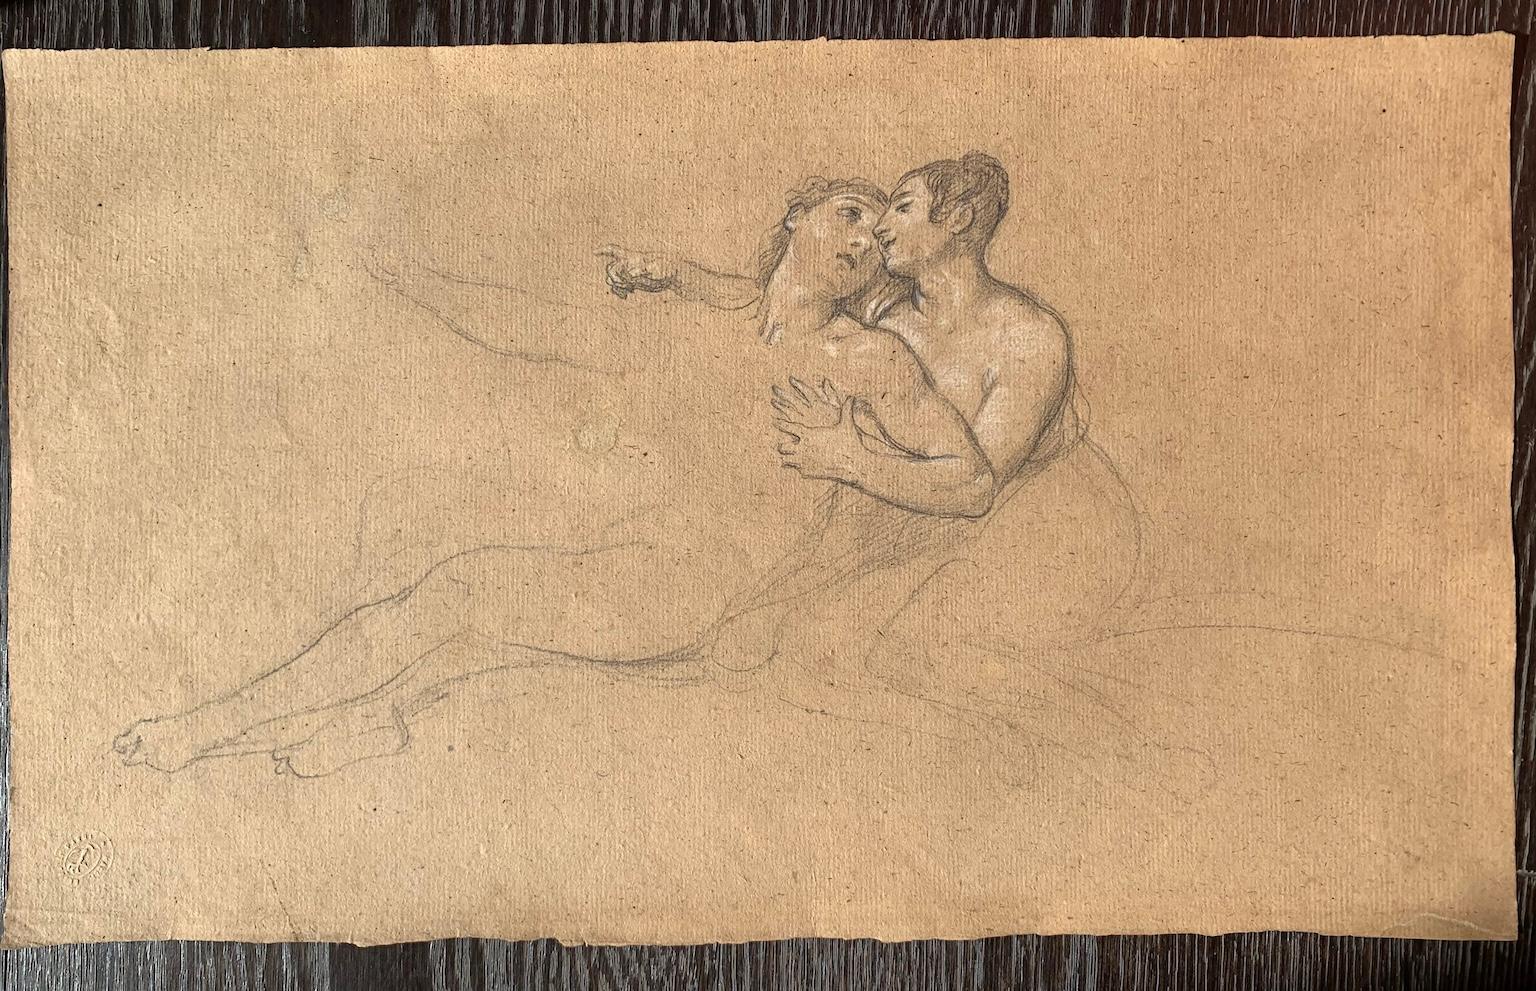 Disegno figurativo del romanticismo fiorentino matita su carta del XIX secolo - Art by Giuseppe Bezzuoli